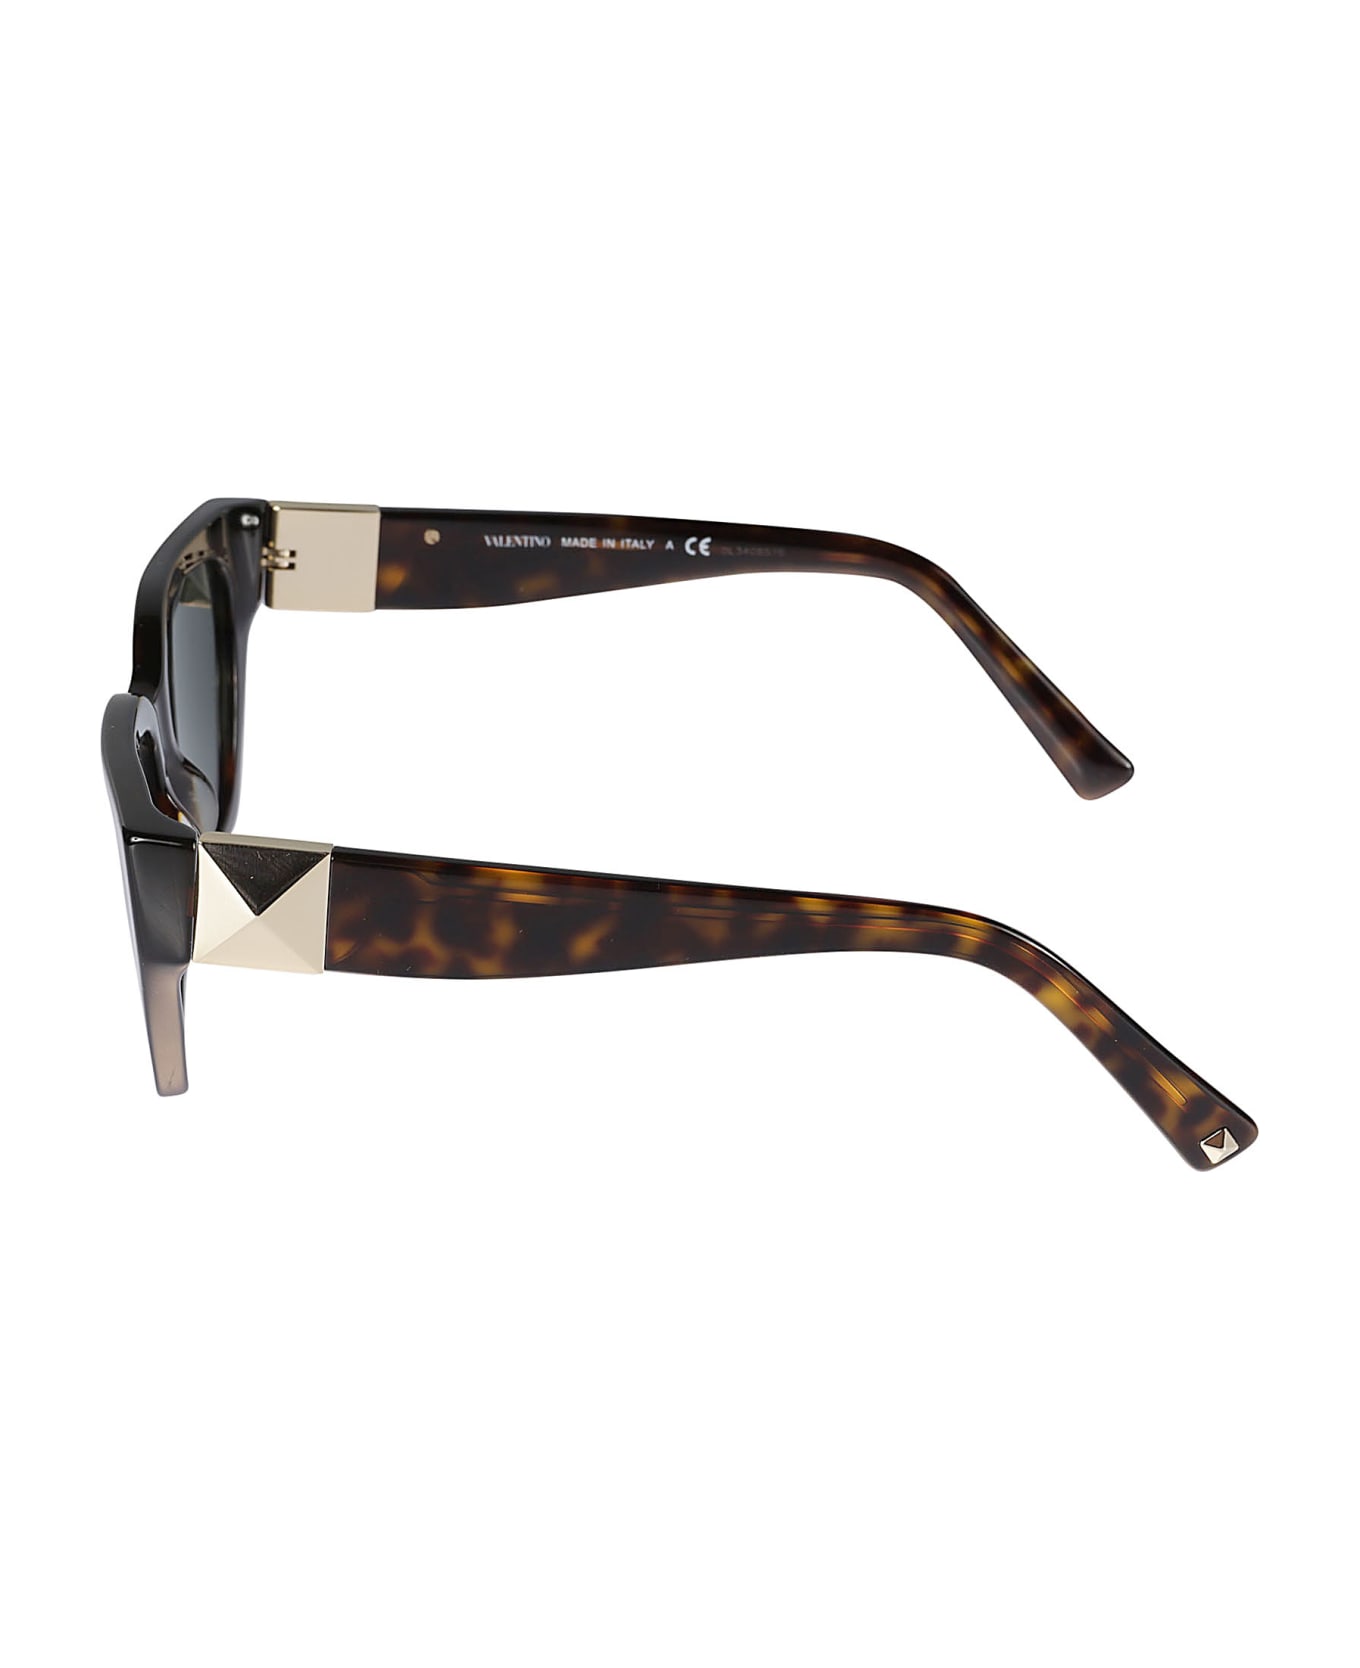 Valentino Eyewear Sole500271 Sunglasses - 500271 サングラス